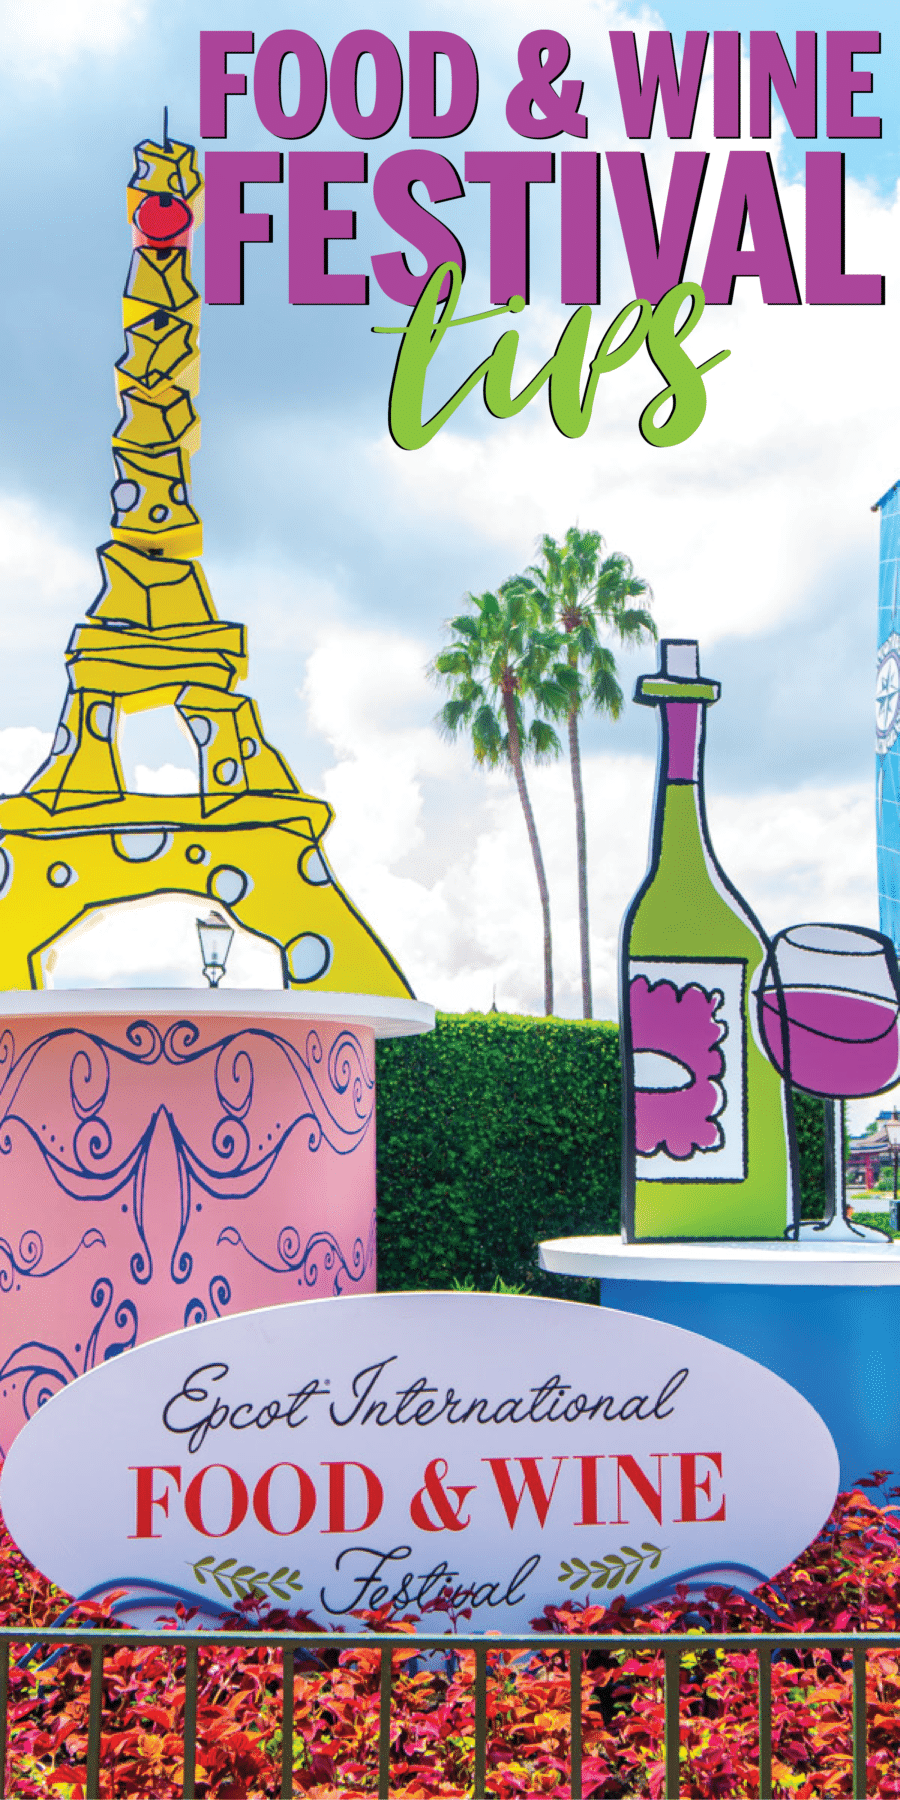 המדריך האולטימטיבי לפסטיבל אוכל ויין של Epcot 2019! תפריט מלא, מערך קונצרטים, טיפים וטריקים ועוד! כל מה שצריך כדי לבדוק את פסטיבל האוכל והיין של דיסני השנה!